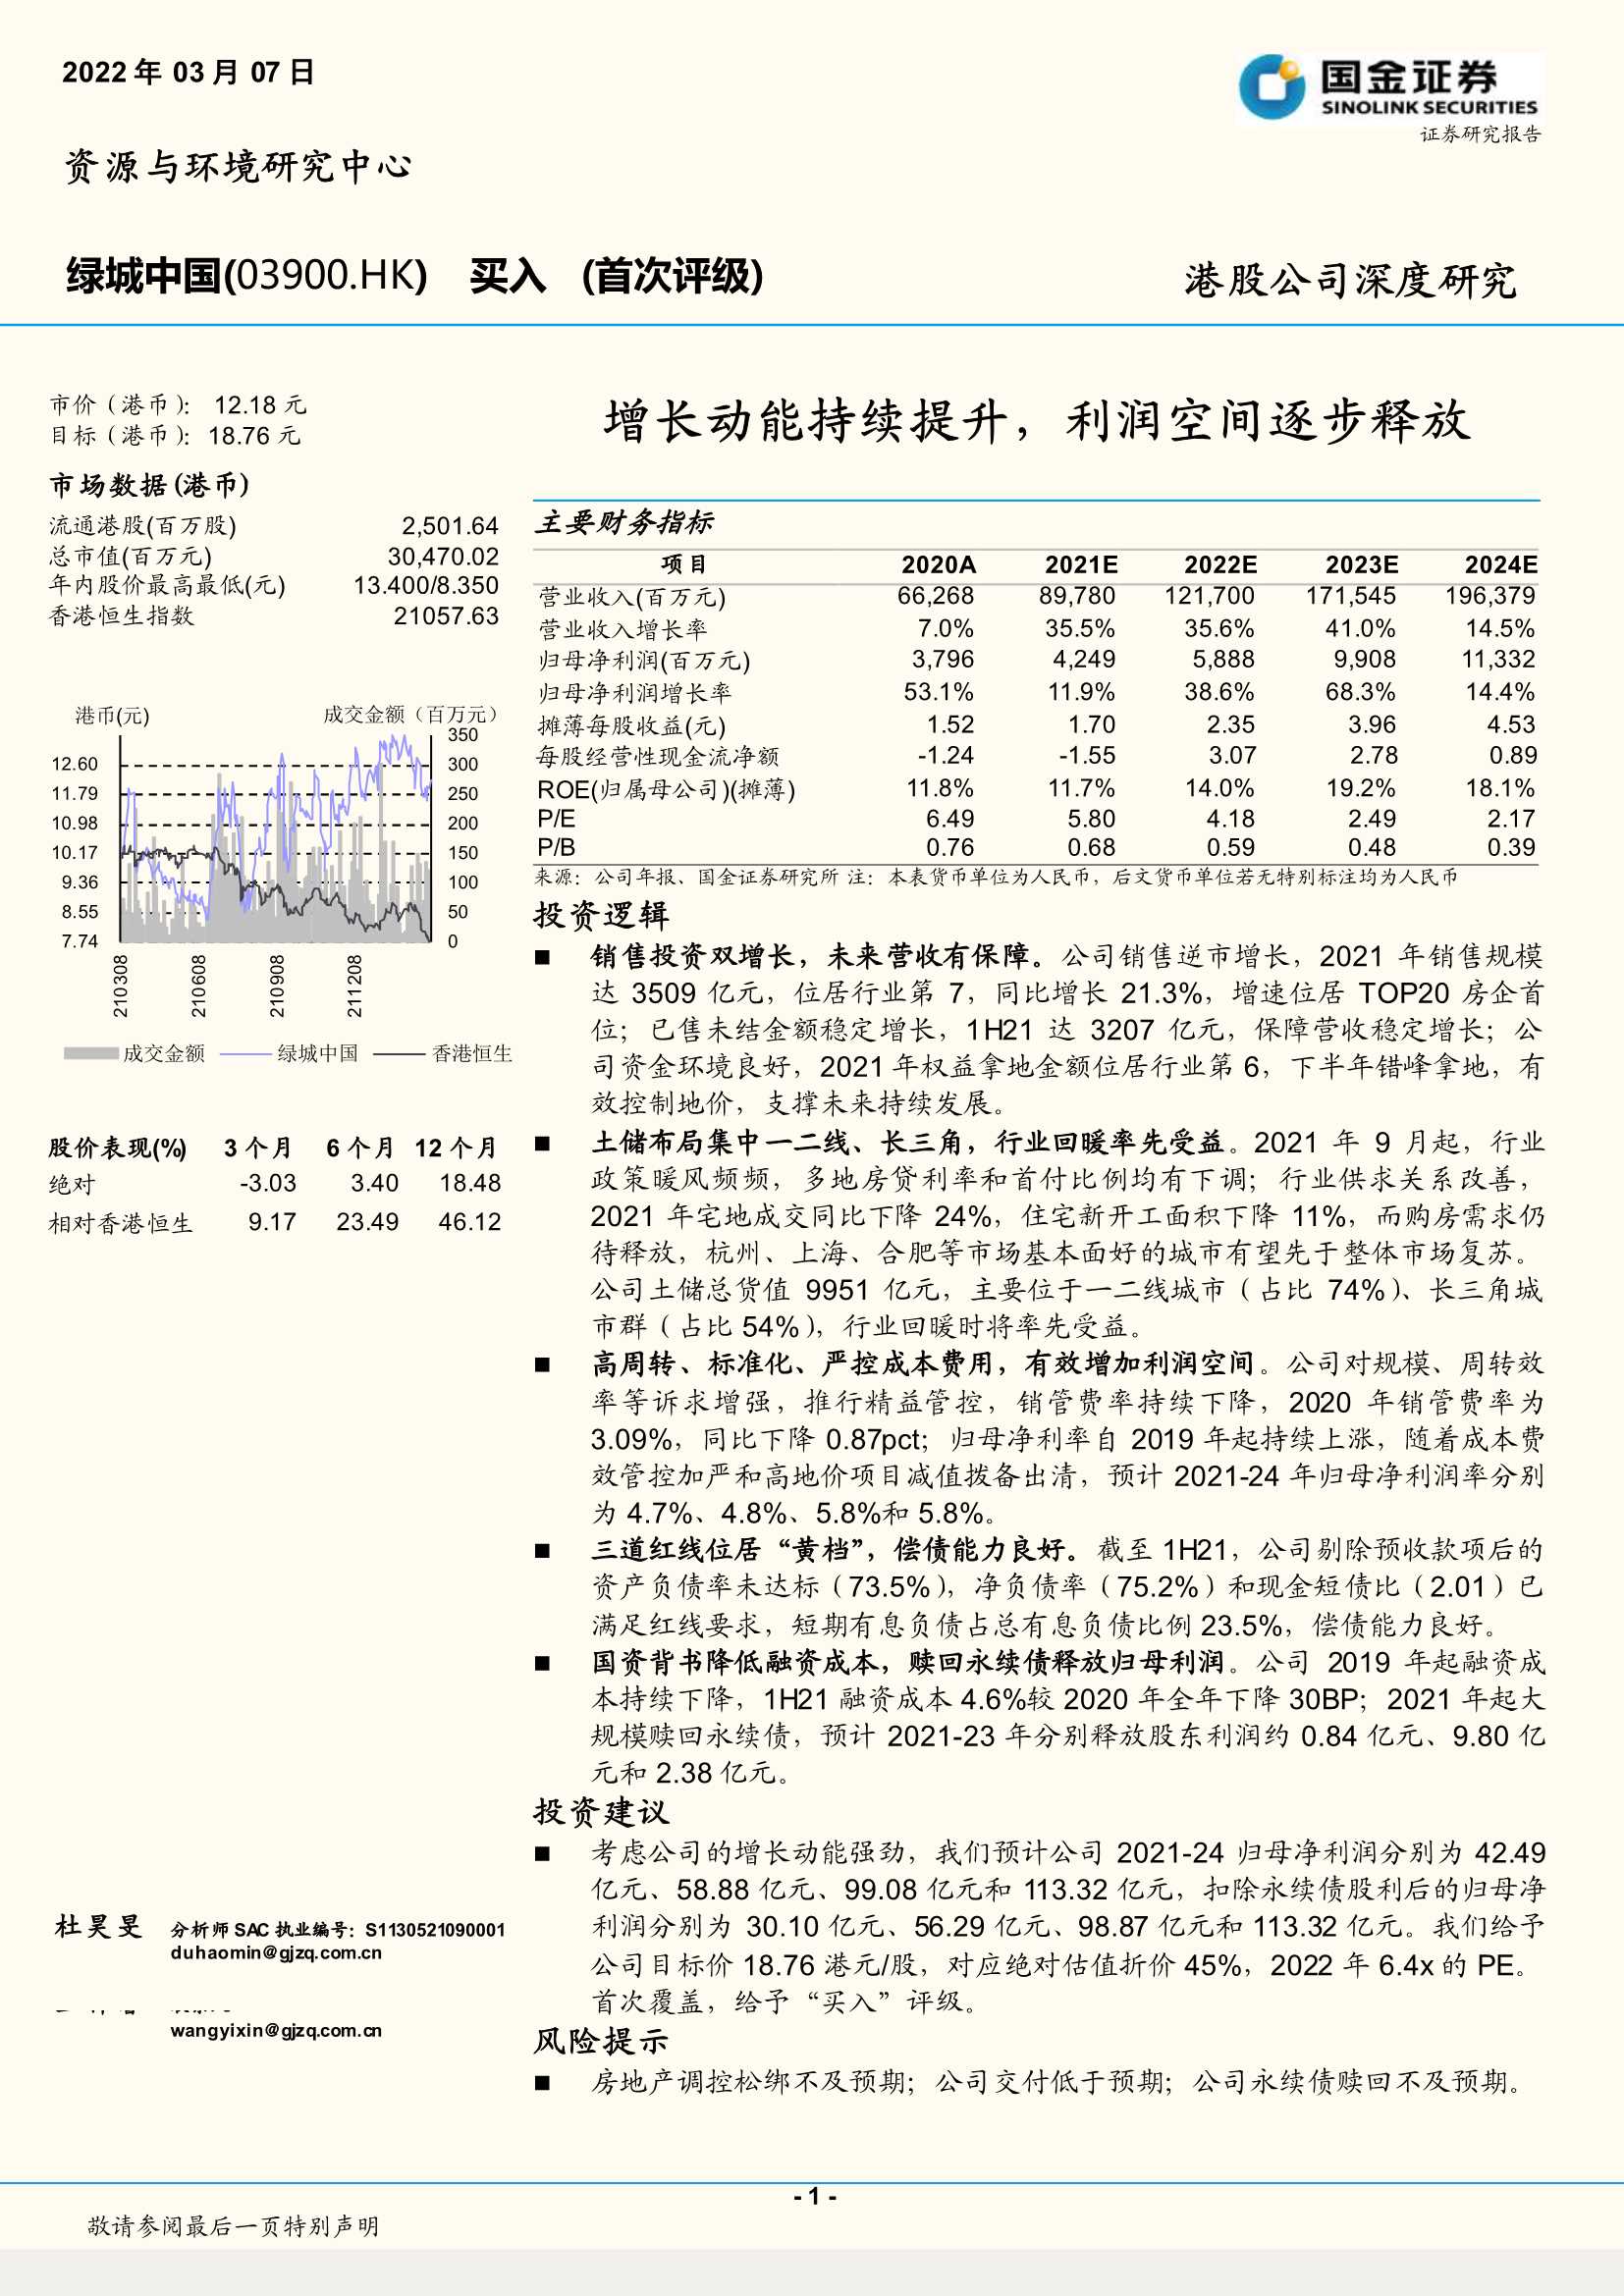 国金证券-绿城中国-3900.HK-增长动能持续提升，利润空间逐步释放-20220307-30页